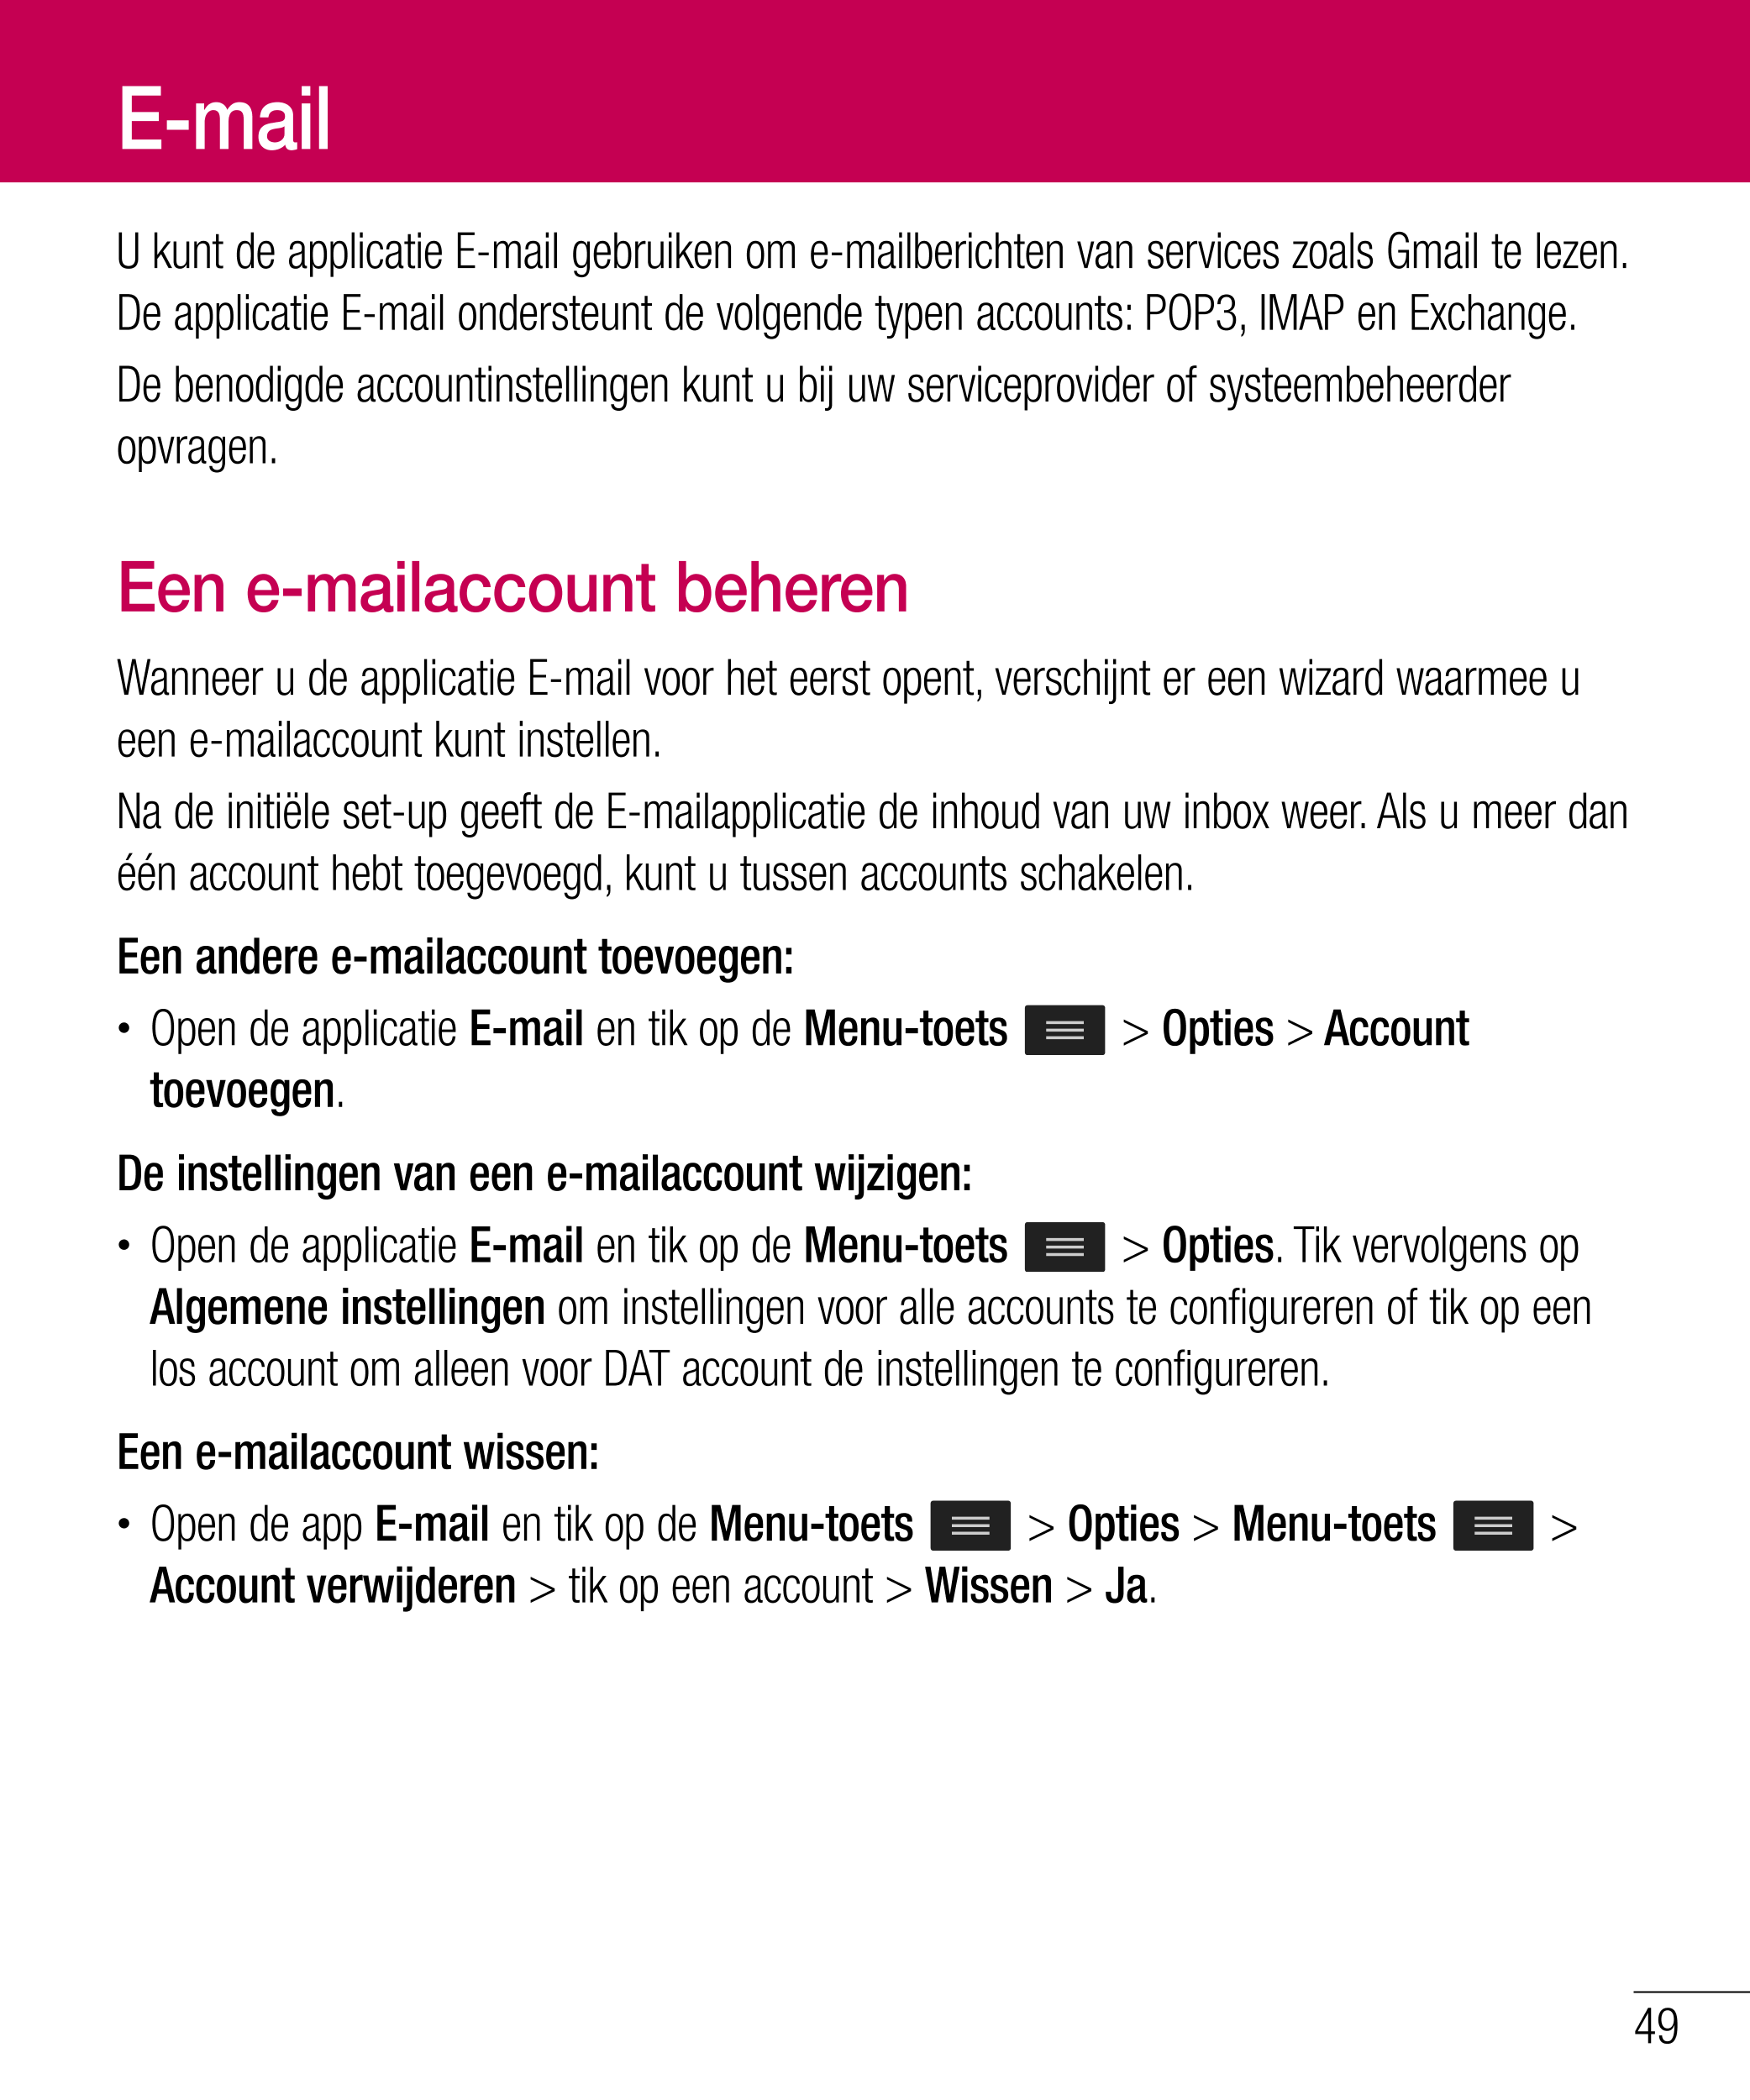 E-mail
U kunt de applicatie E-mail gebruiken om e-mailberichten van services zoals Gmail te lezen. 
De applicatie E-mail onderst